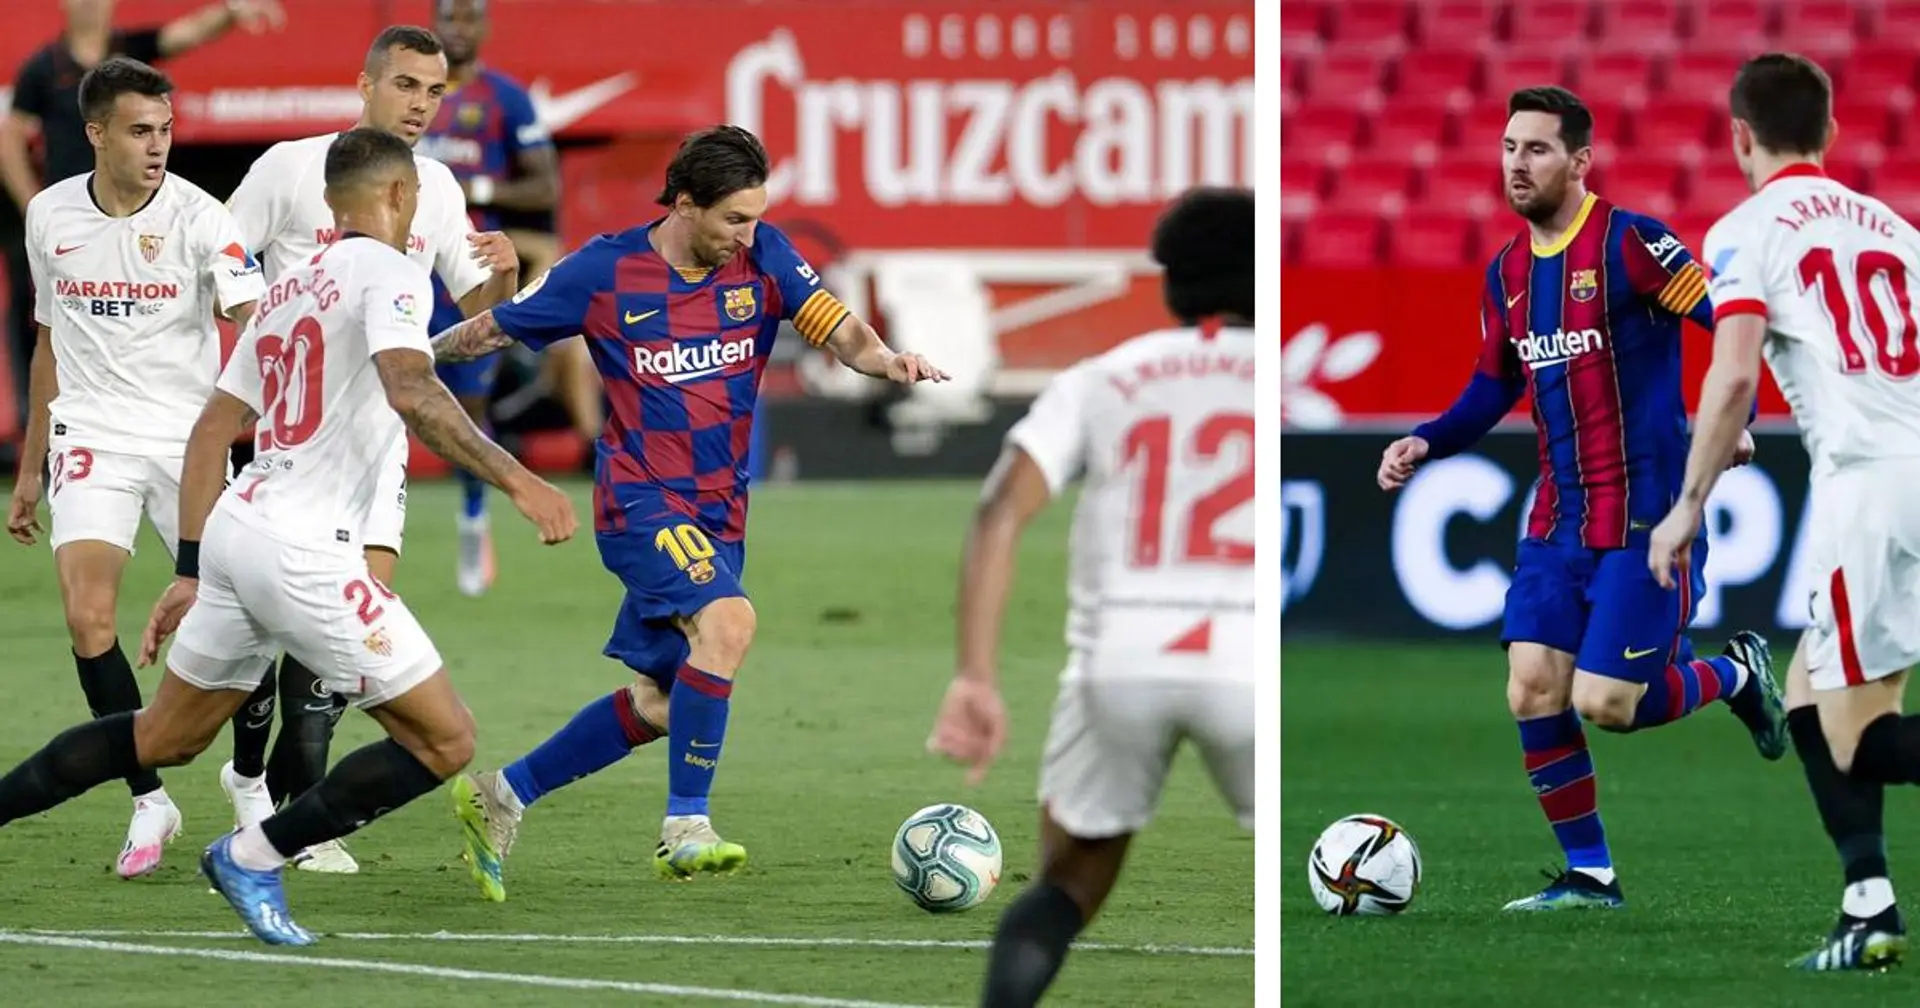 37 buts en 39 matchs et plus: Présentation des records de Leo Messi contre Séville avant le match en Liga